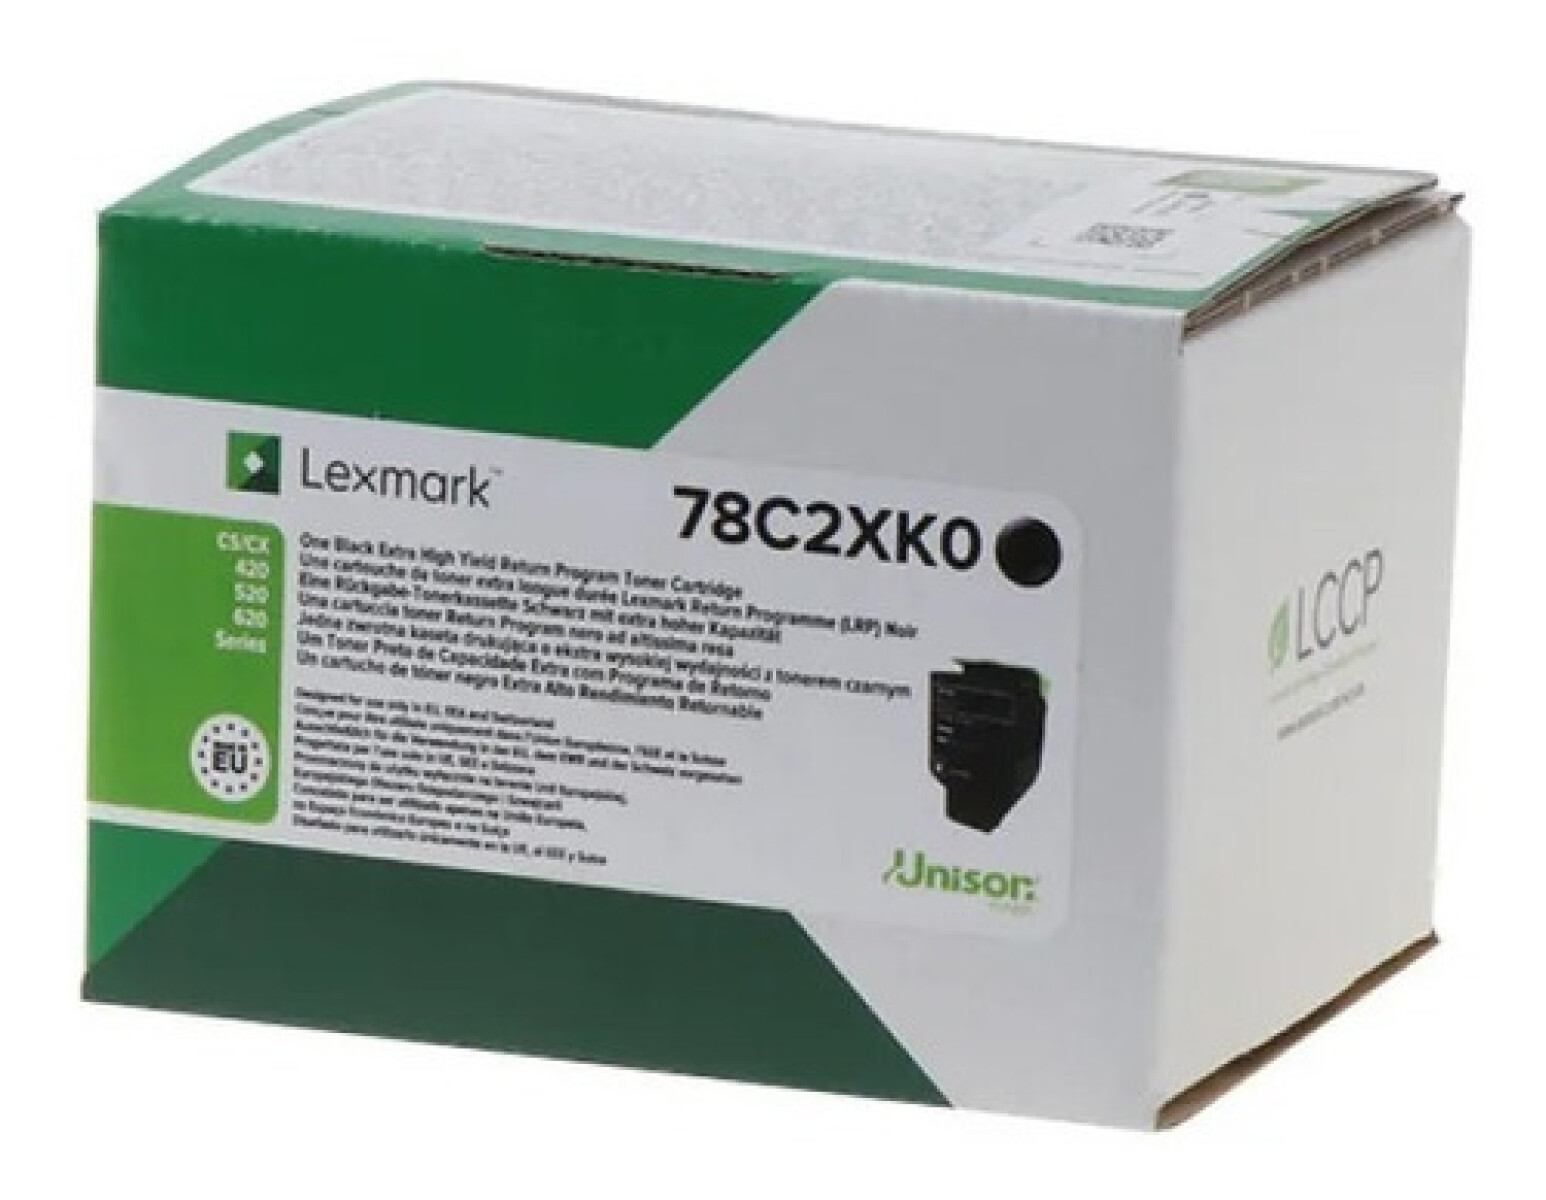 LEXMARK TONER 78C4XK0 NEGRO CX522/421 8500 CPS - Lexmark Toner 78c4xk0 Negro Cx522/421 8500 Cps 